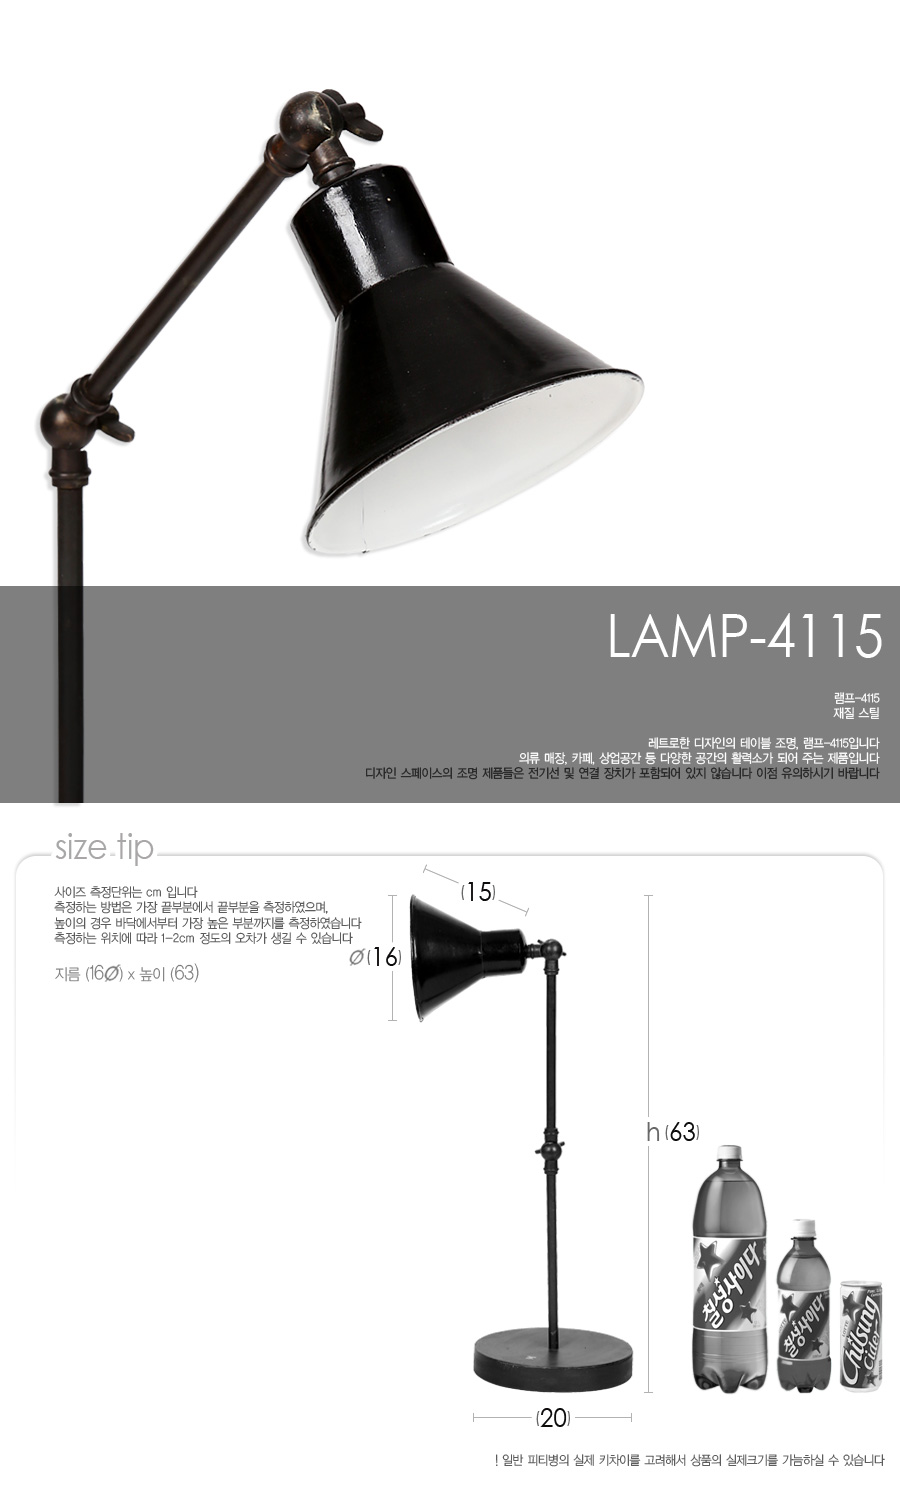 lamp-4115_01.jpg